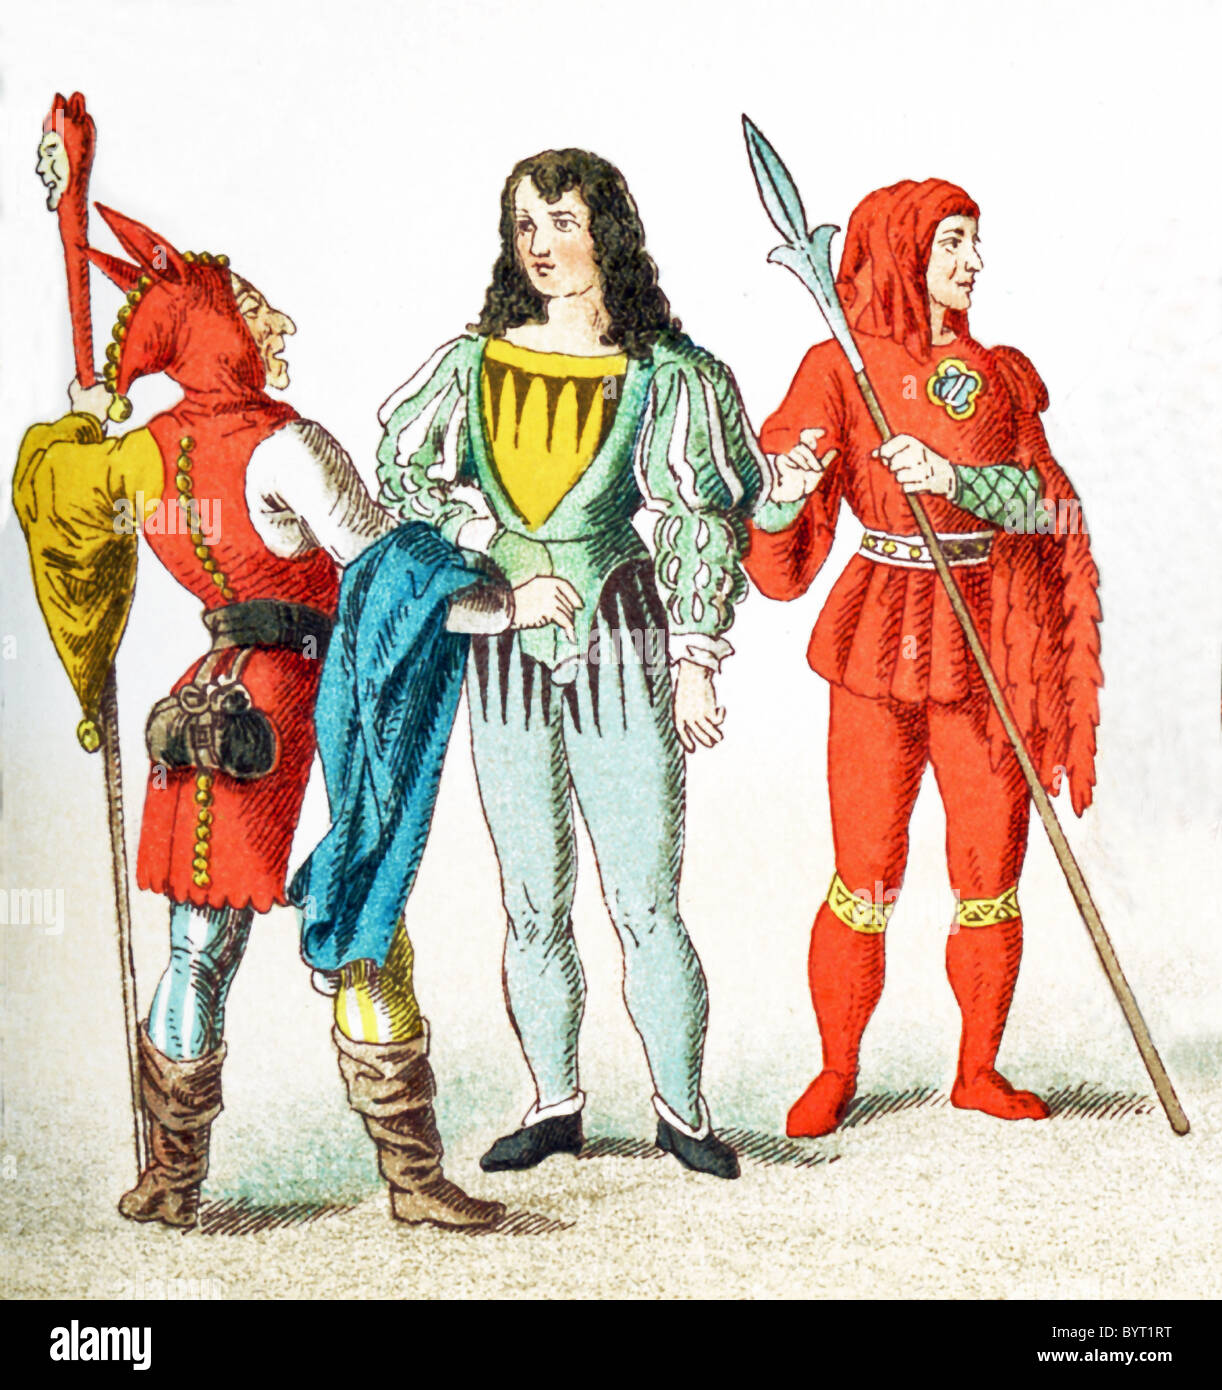 Les chiffres représentés ici sont Allemands entre A.D. 1450-1500. Ils sont, de gauche à droite : jester, chevalier, et l'huissier. Banque D'Images